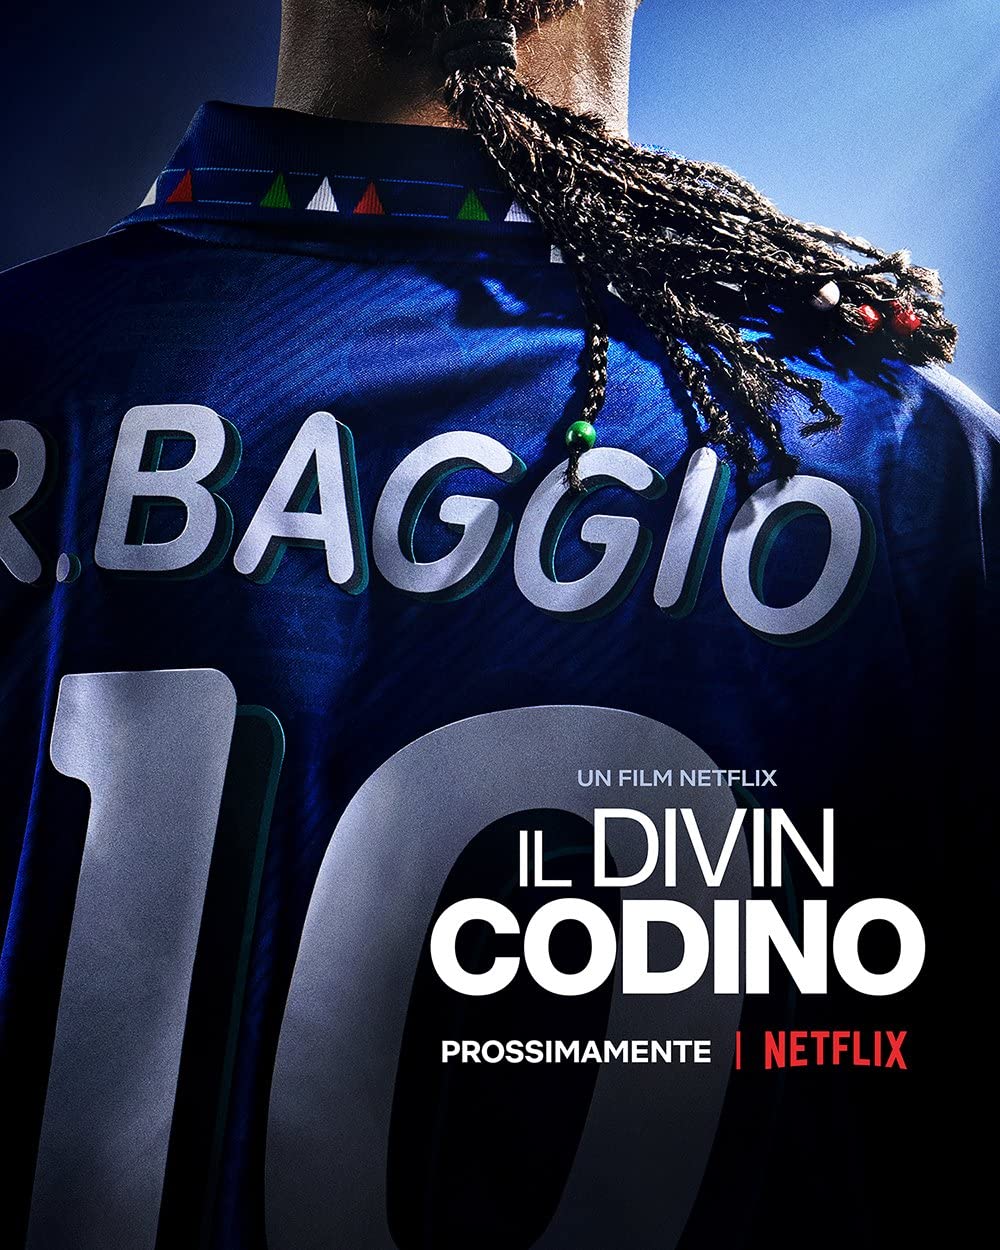 Roberto Baggio, az isteni Copfocska online